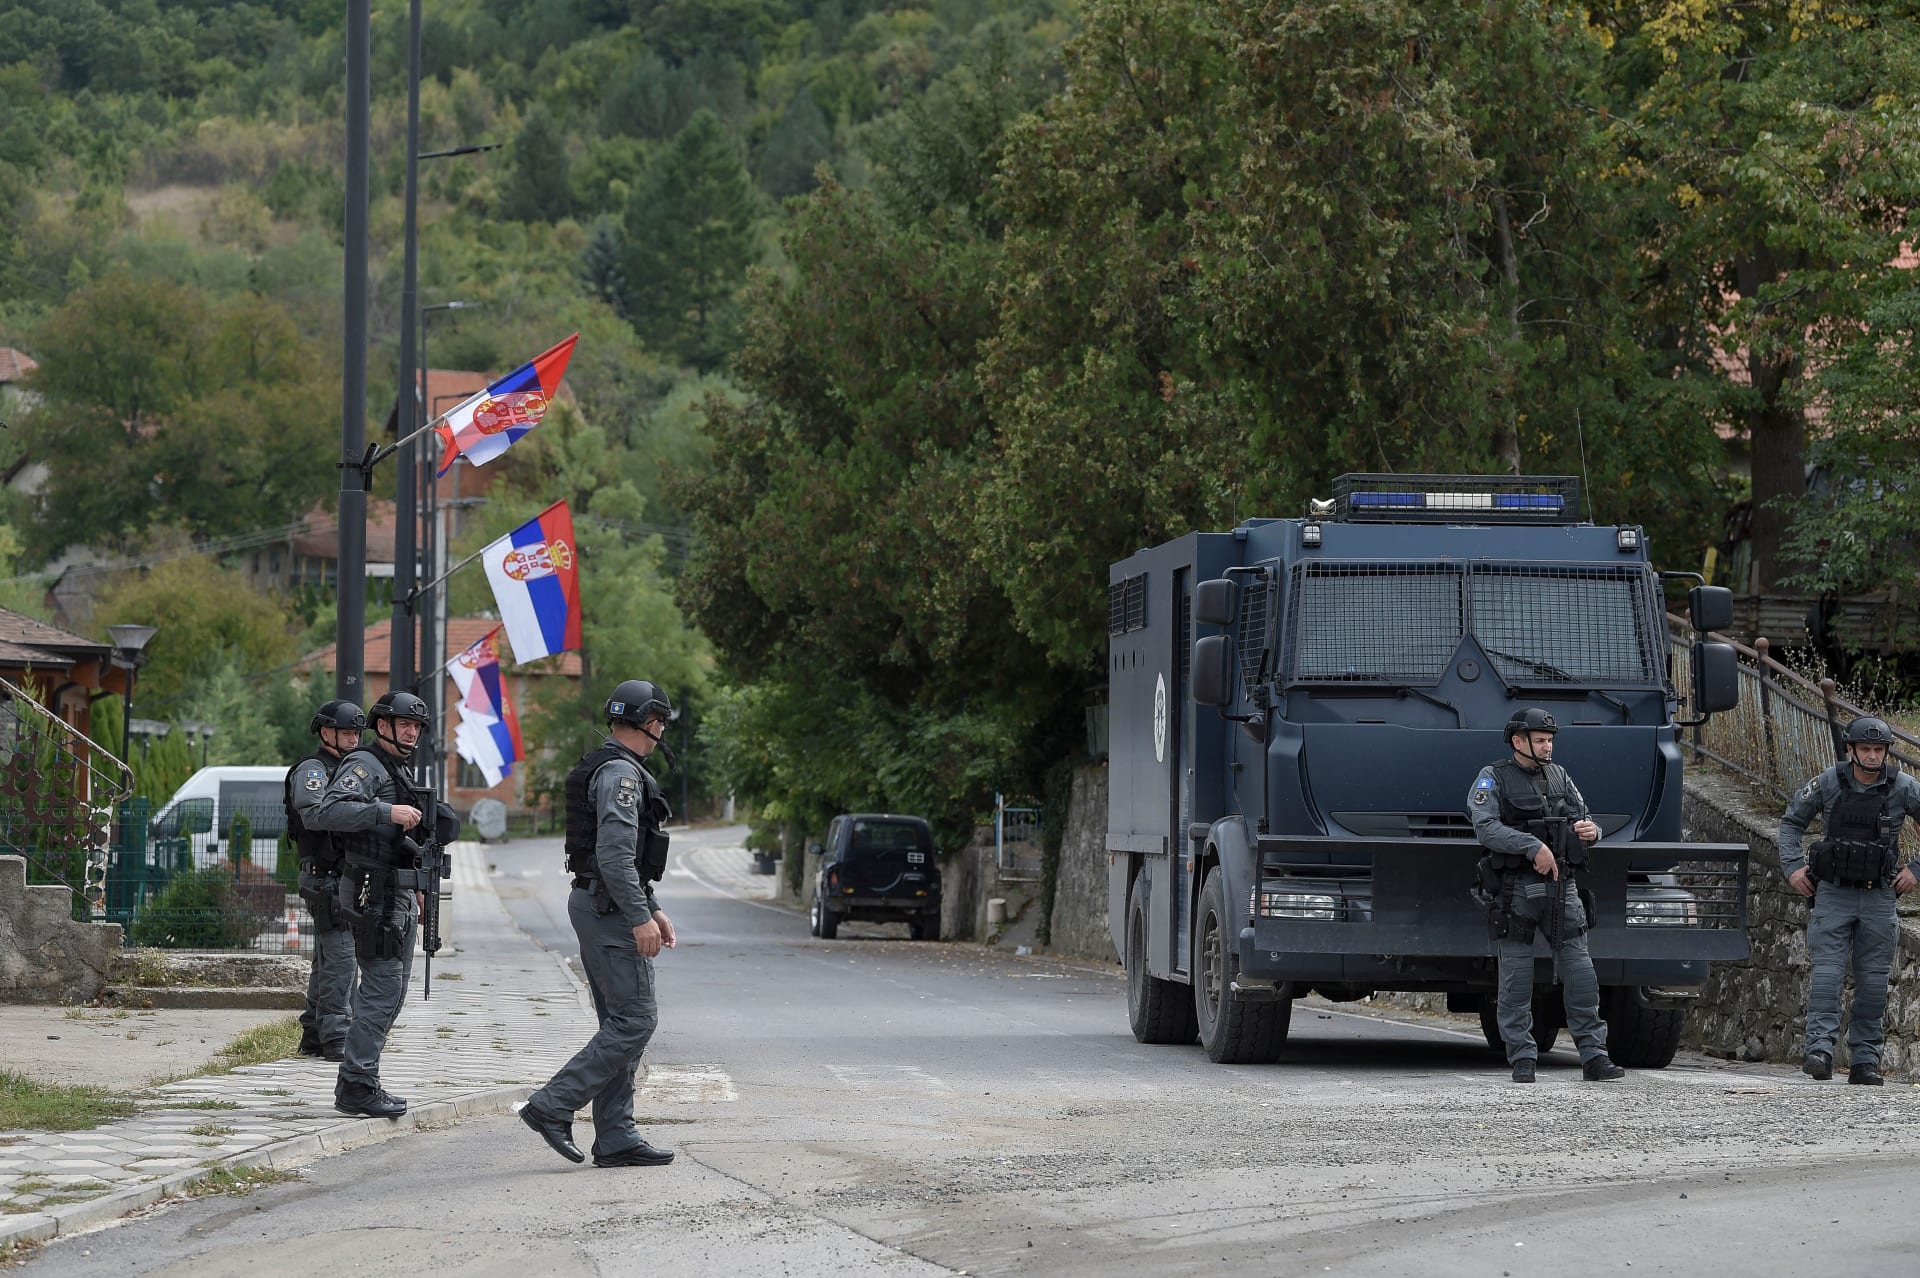 واشنطن تحذر من حشد بلغراد والناتو يدفع بقوات إضافية.. جولة جديدة من التوترات بين كوسوفو وصربيا